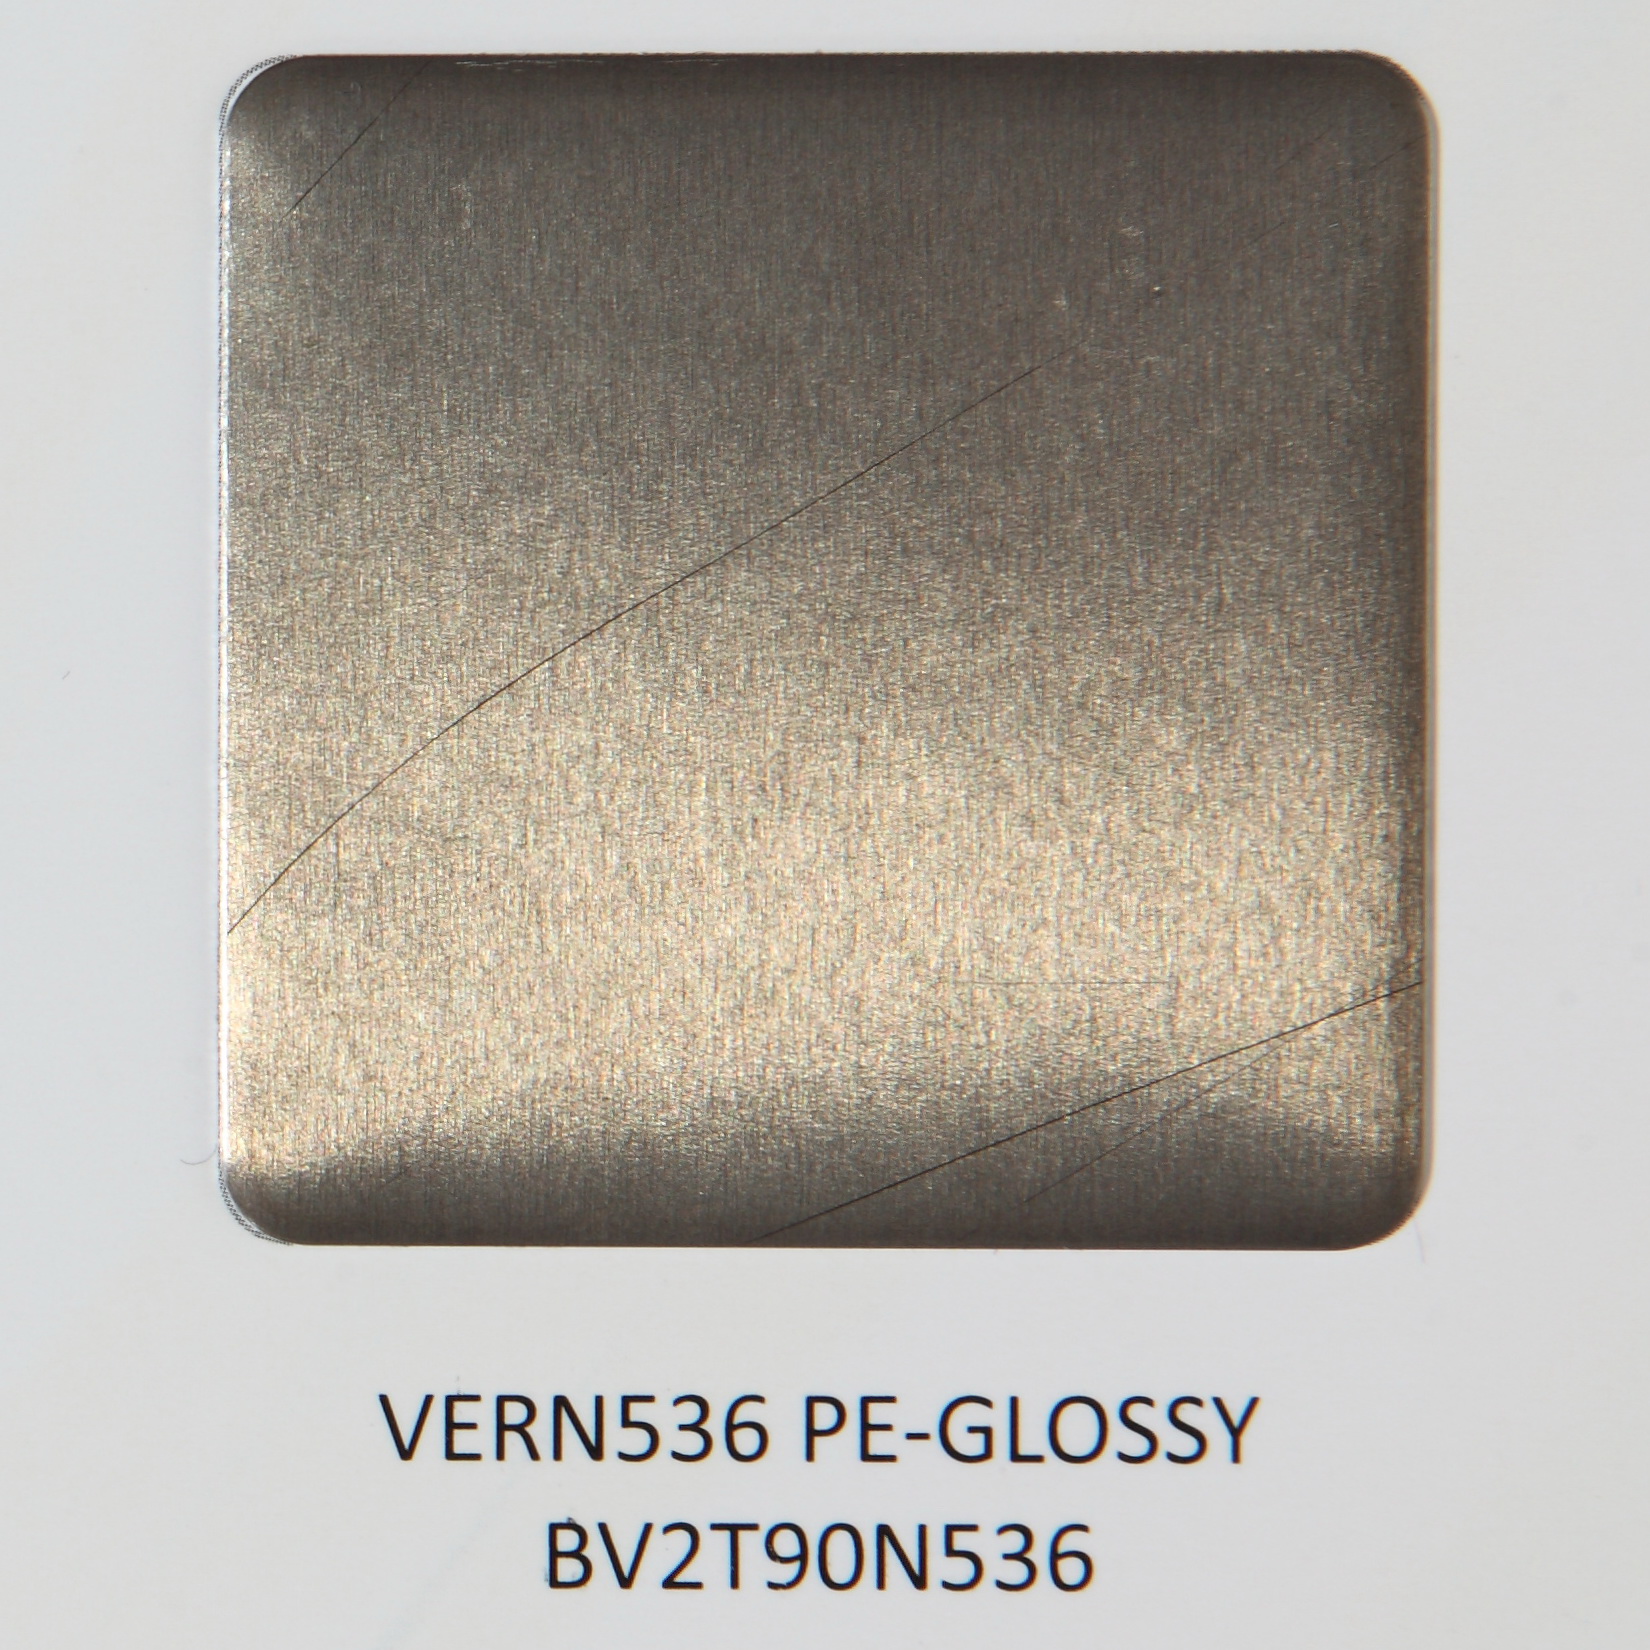 VERN536 PE GLOSSY BV2T90N536